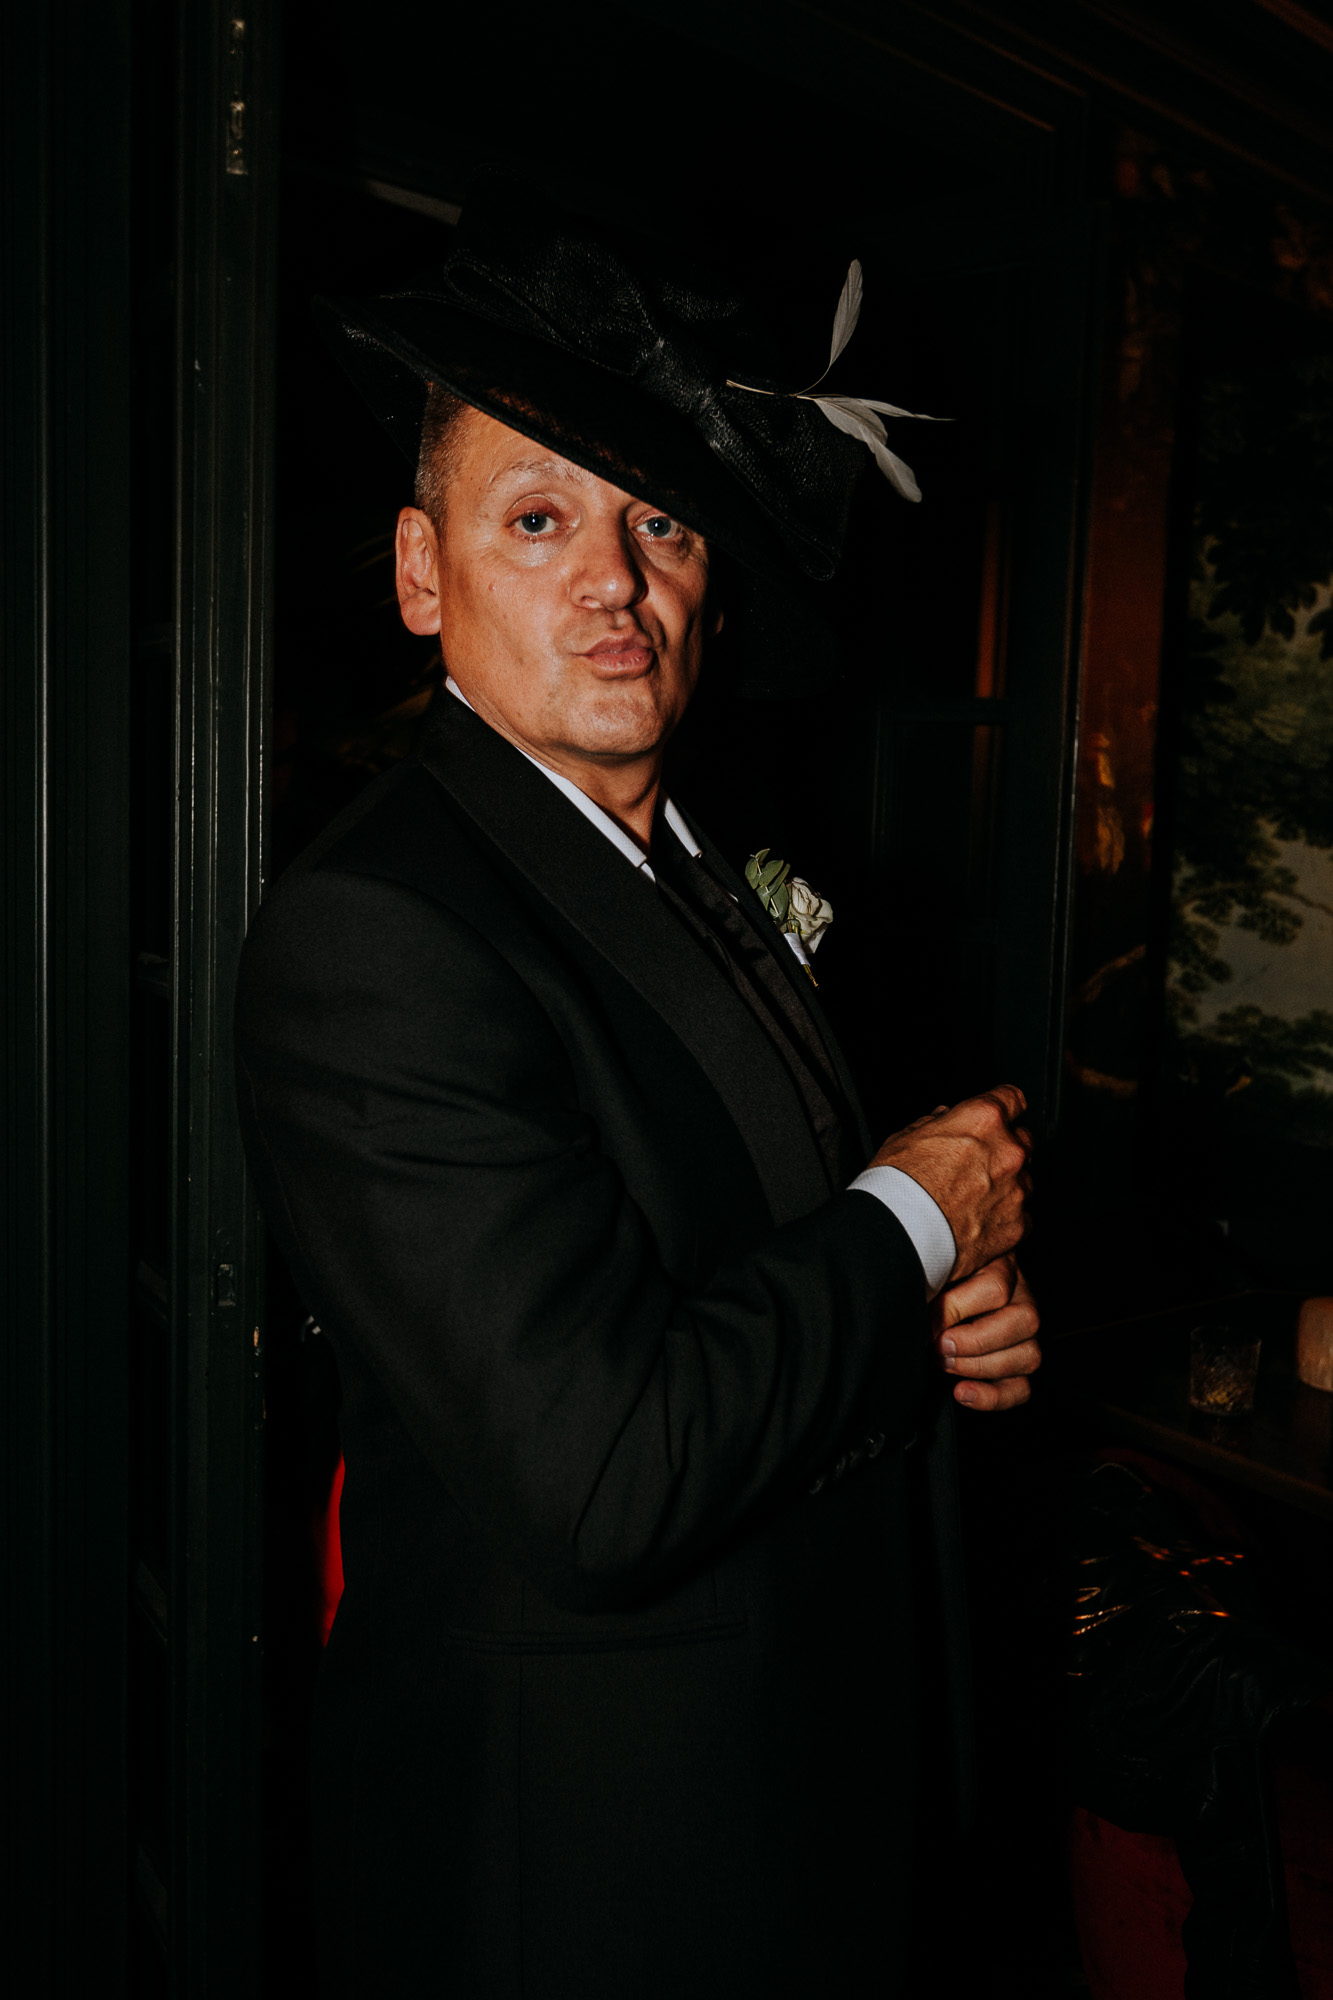 le père de la mariée pose avec un chapeau emprunté à une des invitées